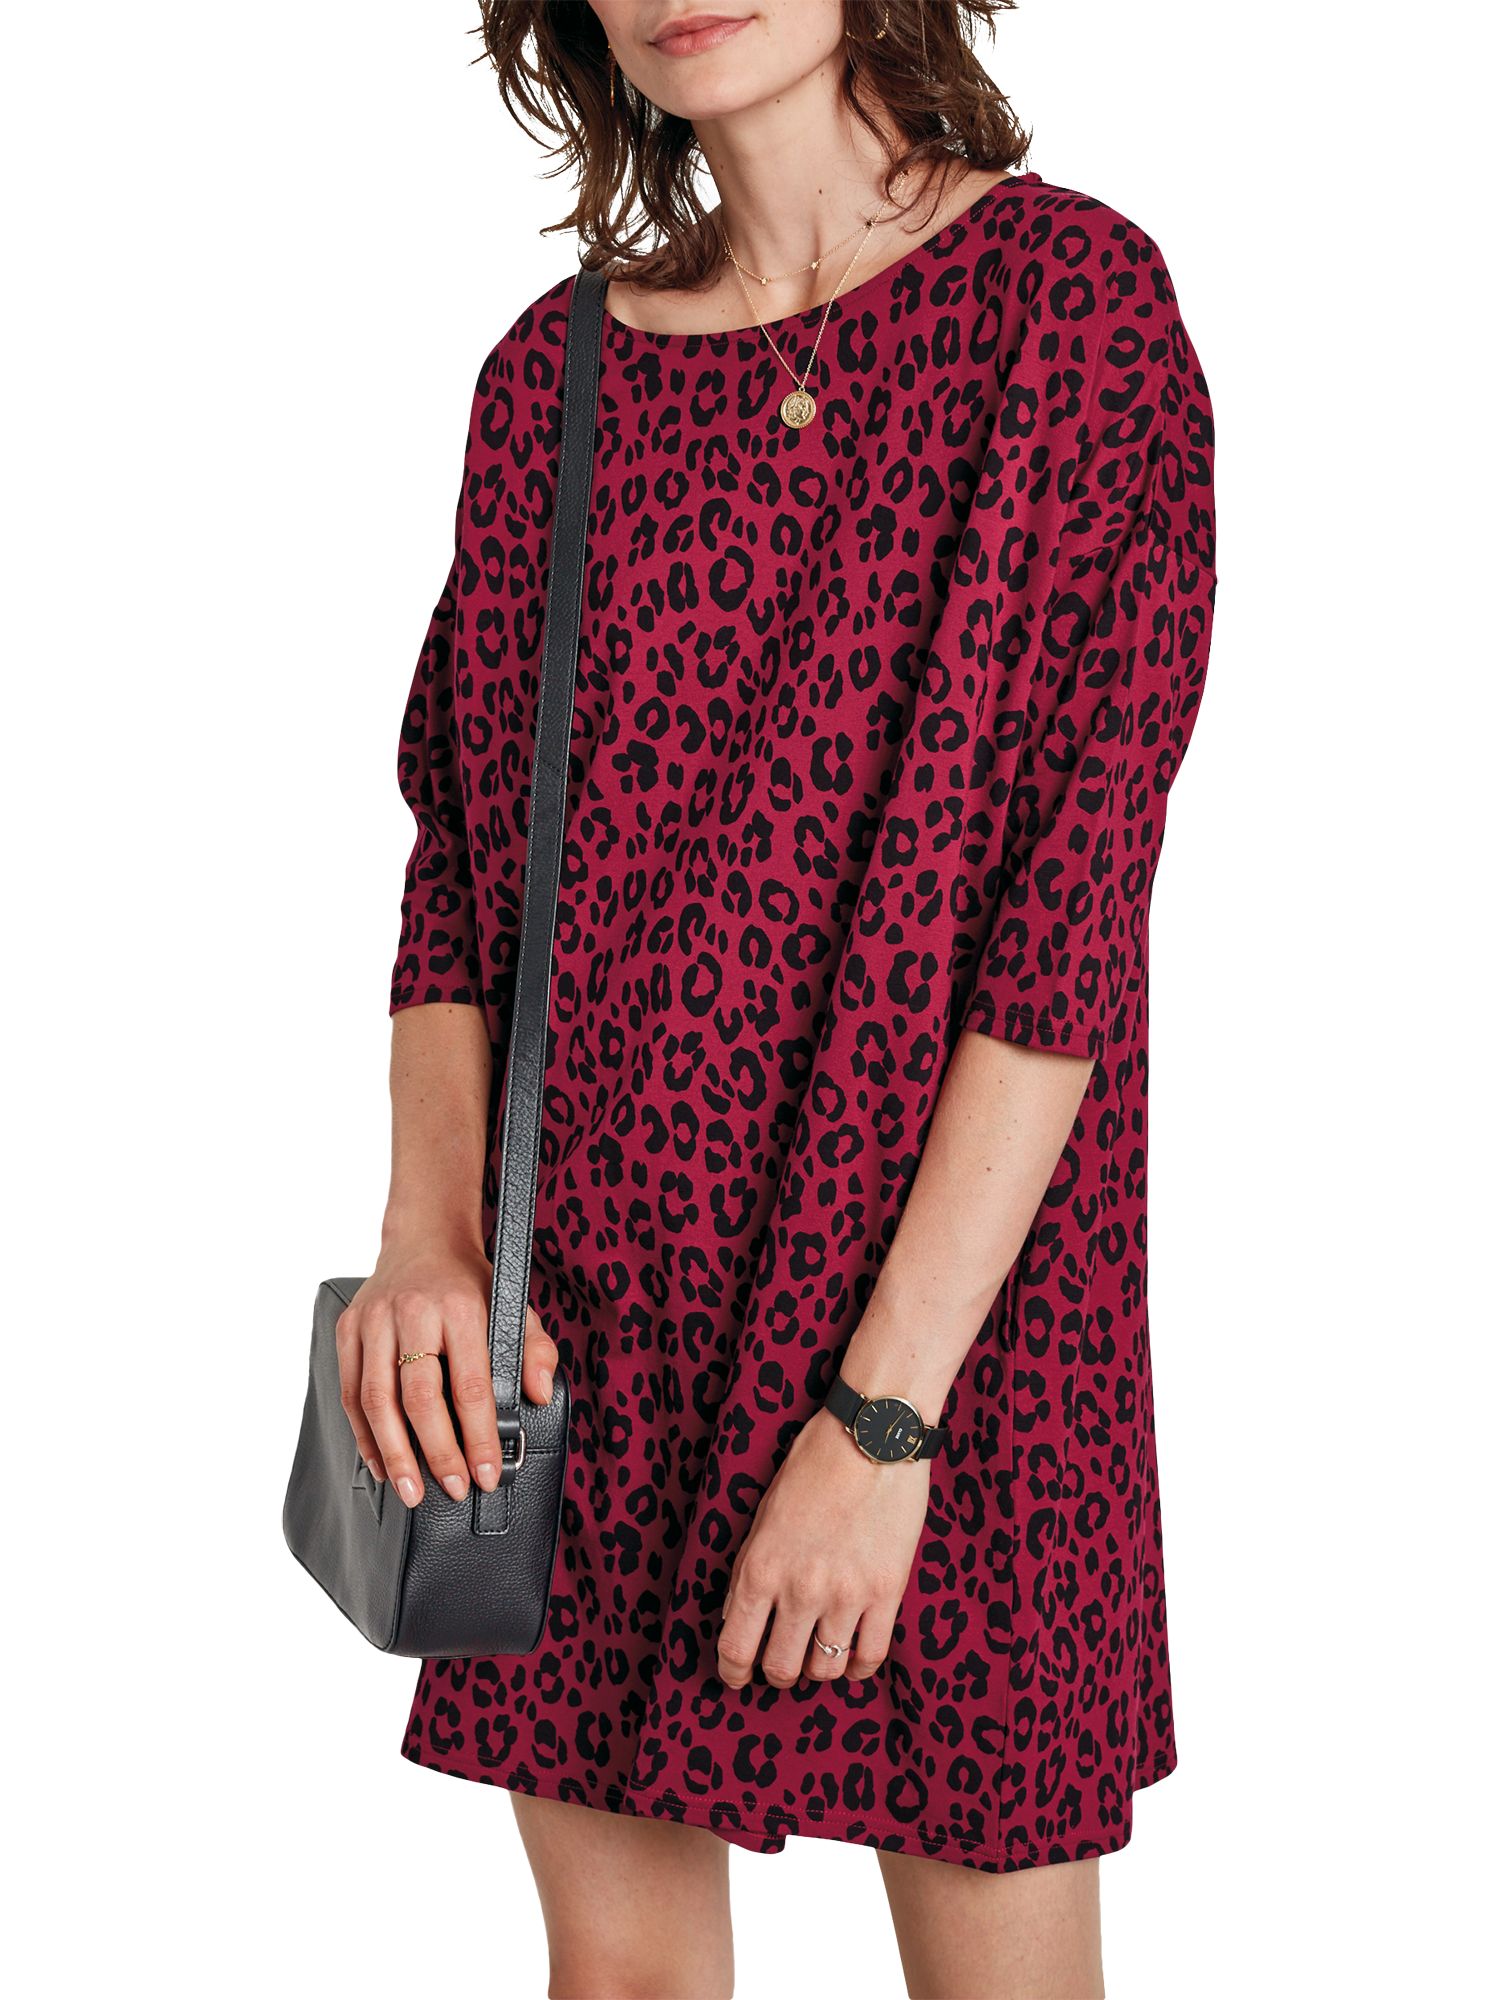 next leopard print dress girls